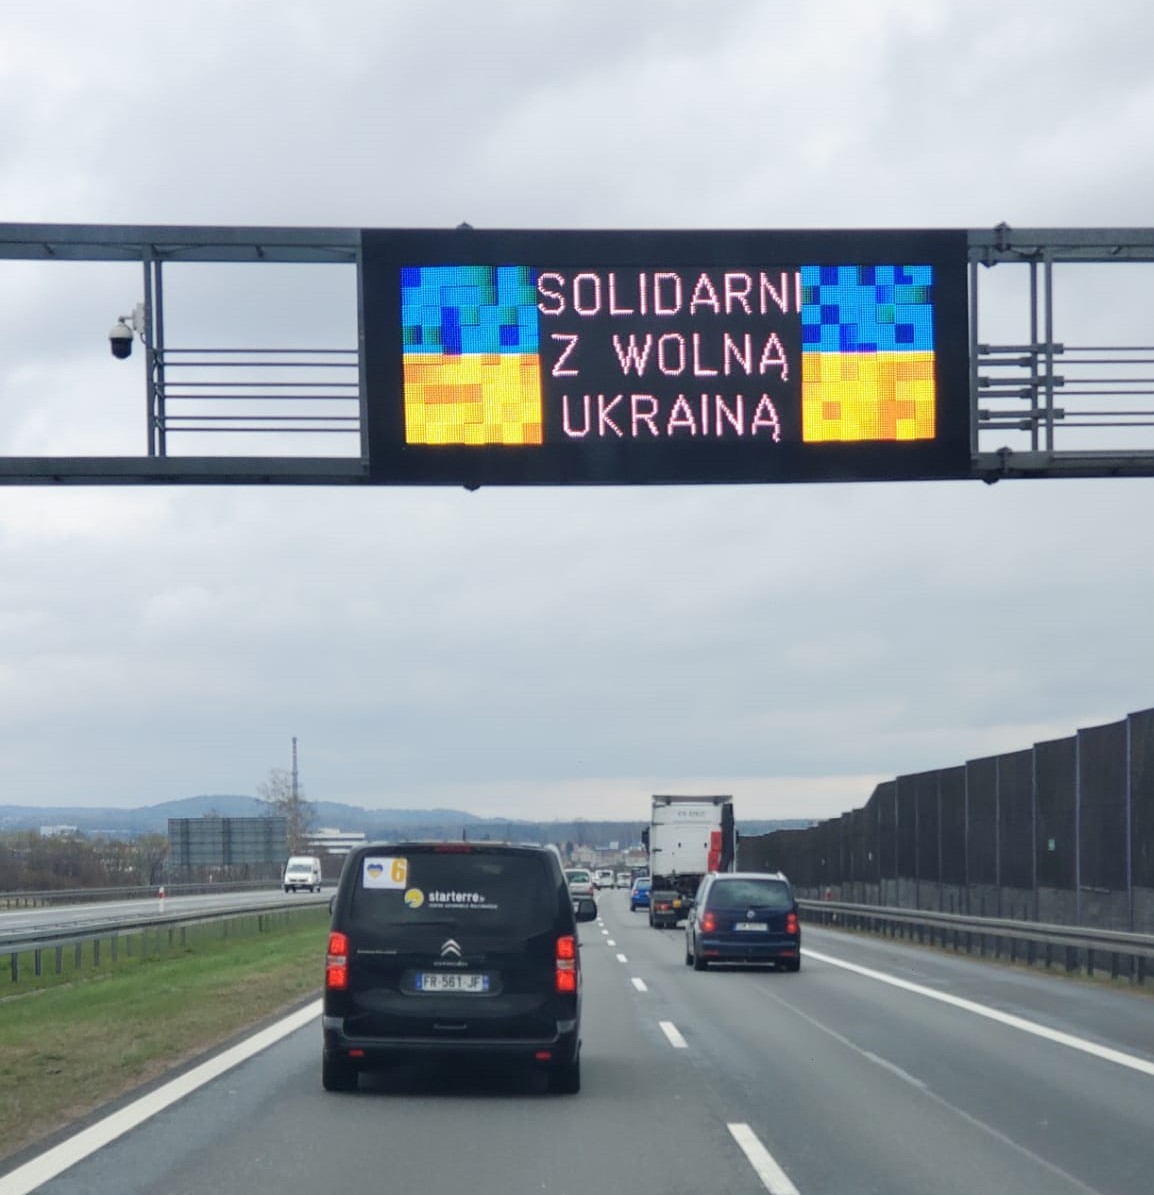 Un des convois arrive en Pologne, solidaire des citoyens ukrainiens.